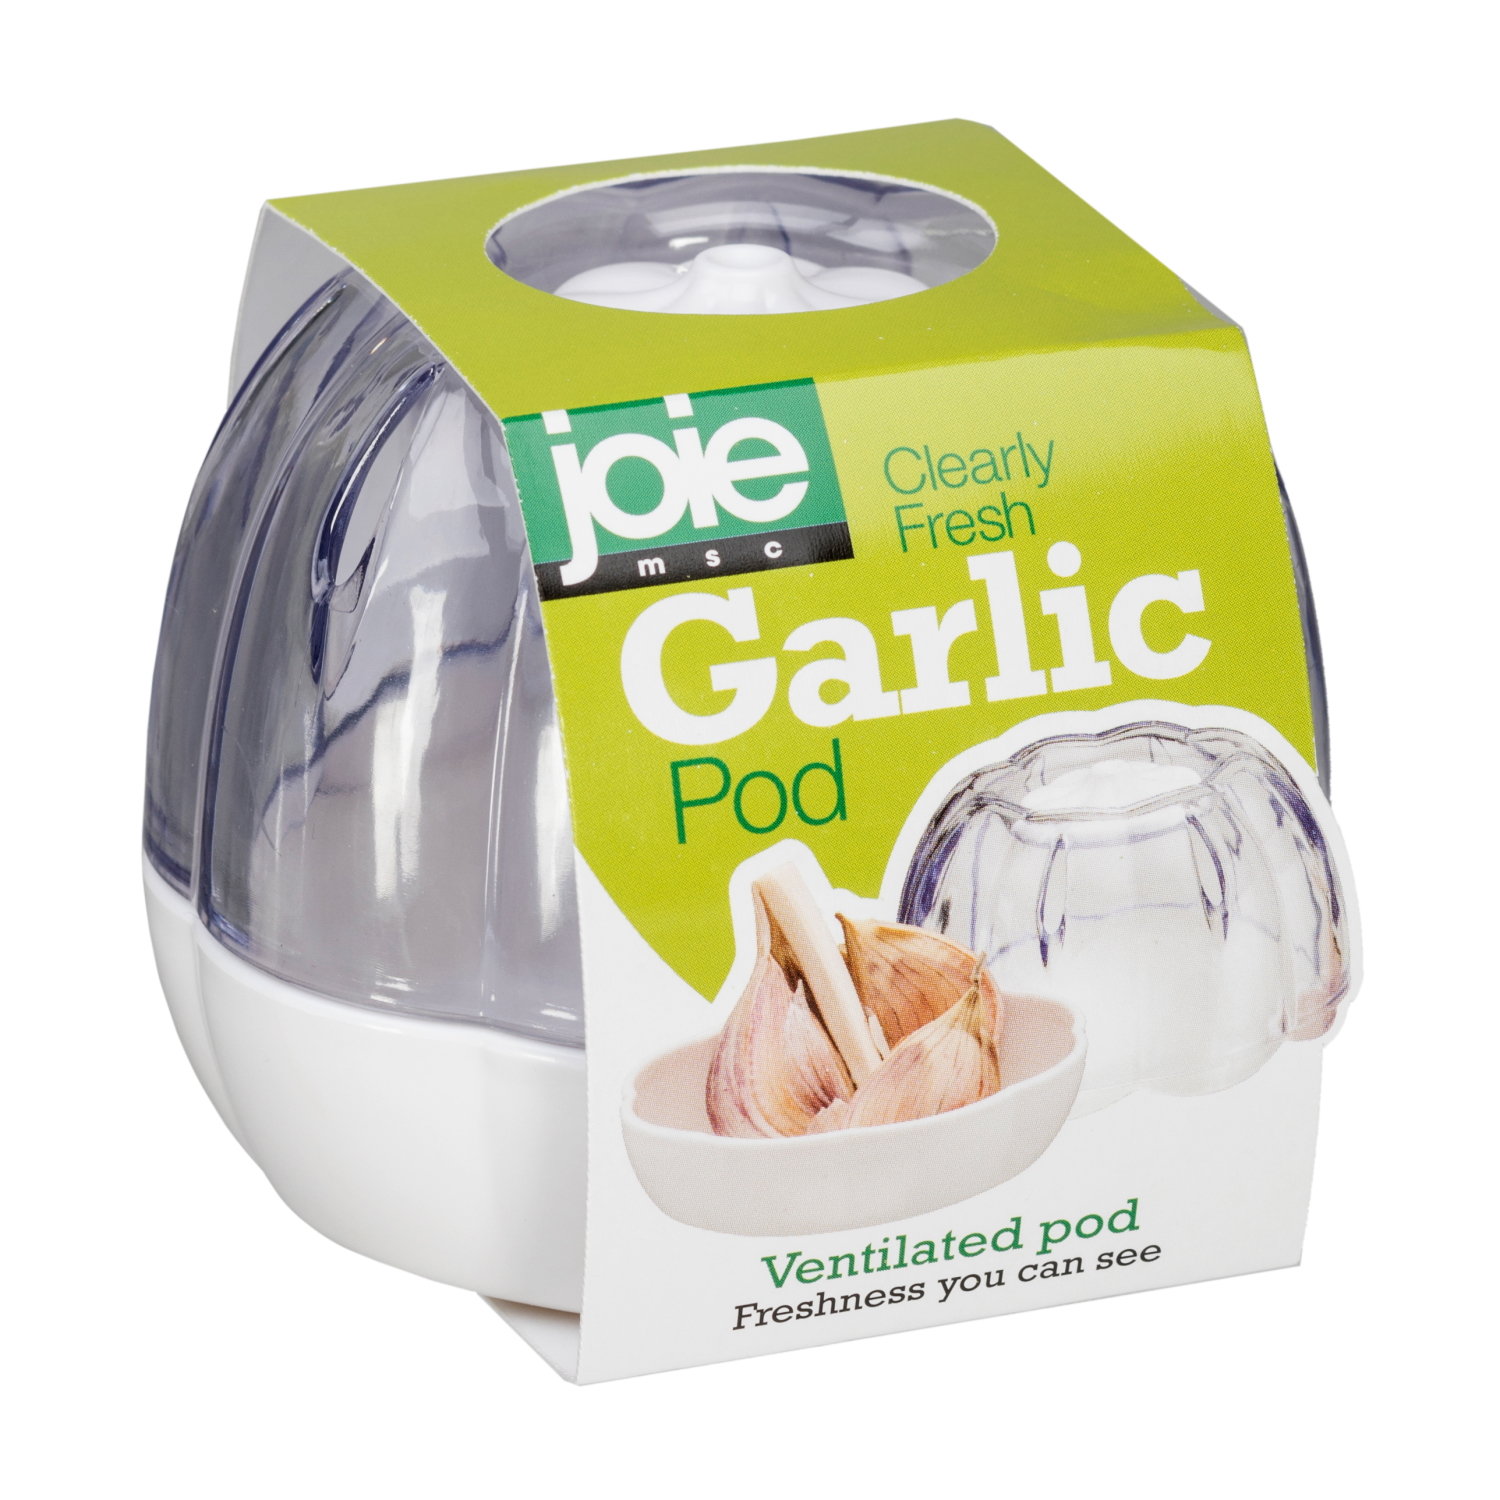 Joie Garlic Pod 8.6X8.6X7.2CM